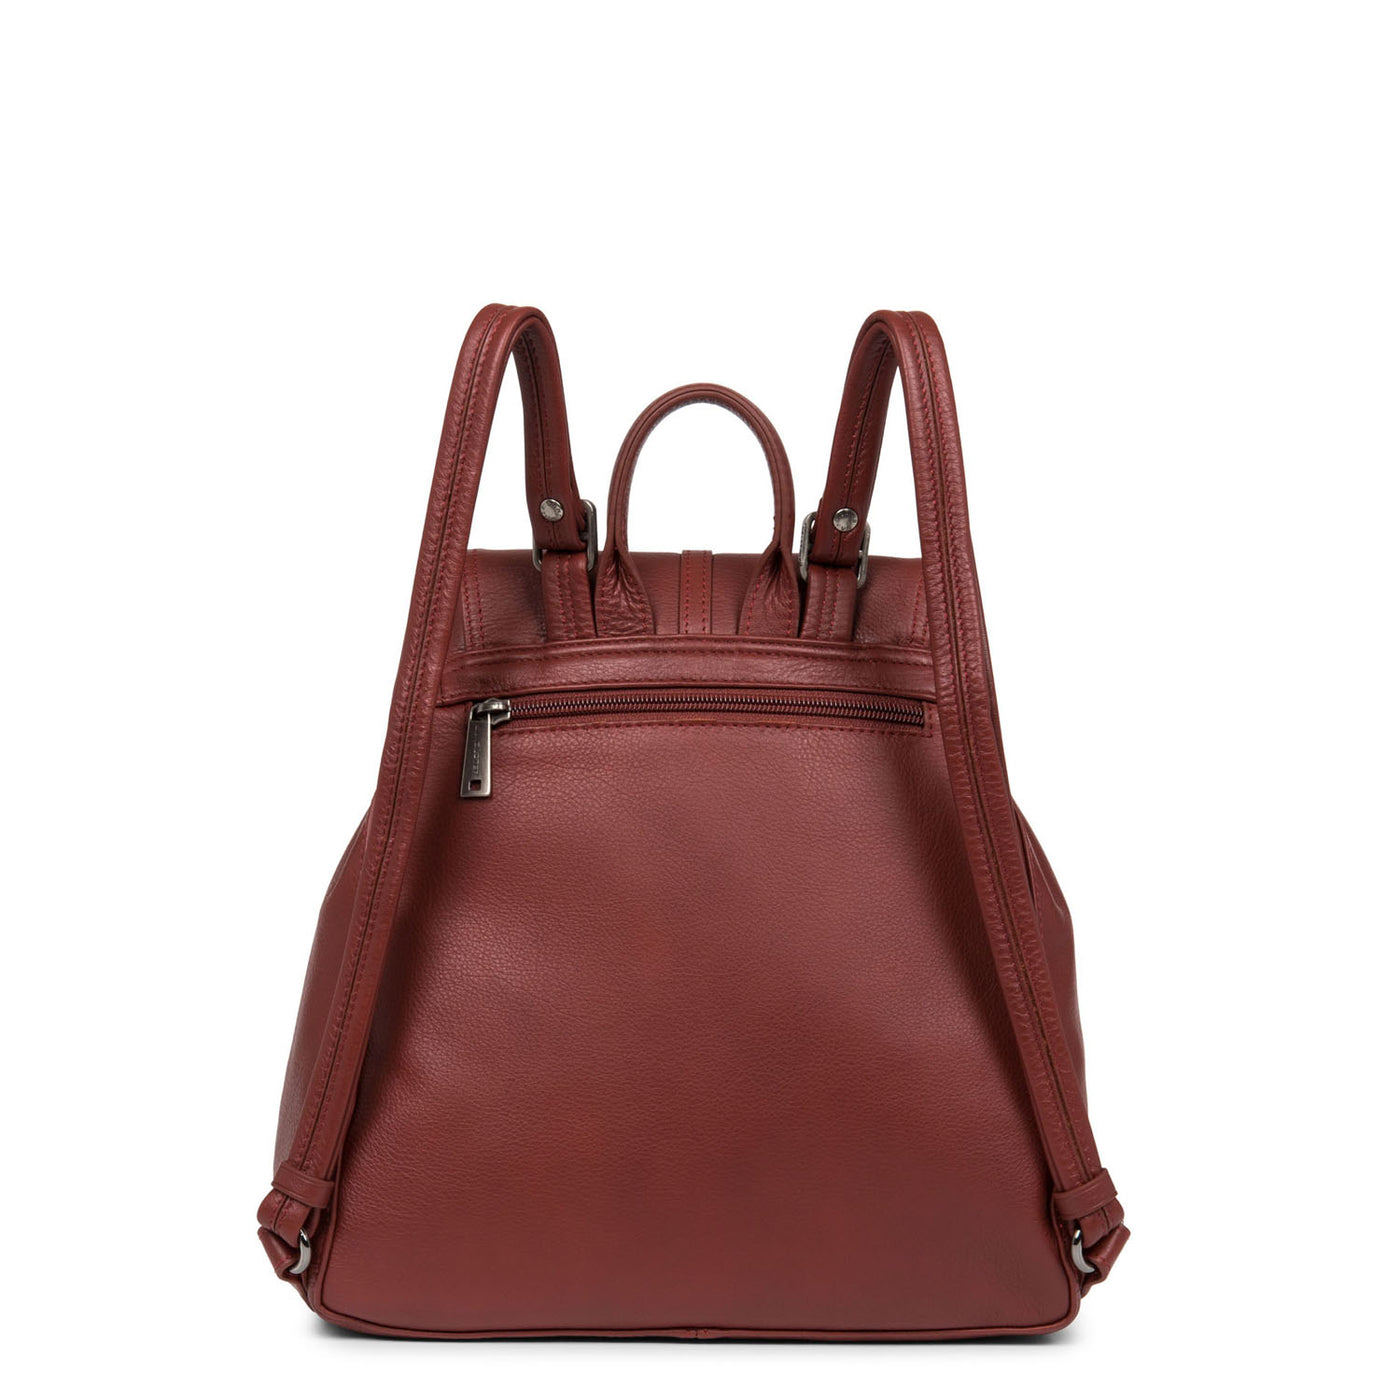 sac à dos - soft vintage nova #couleur_bordeaux